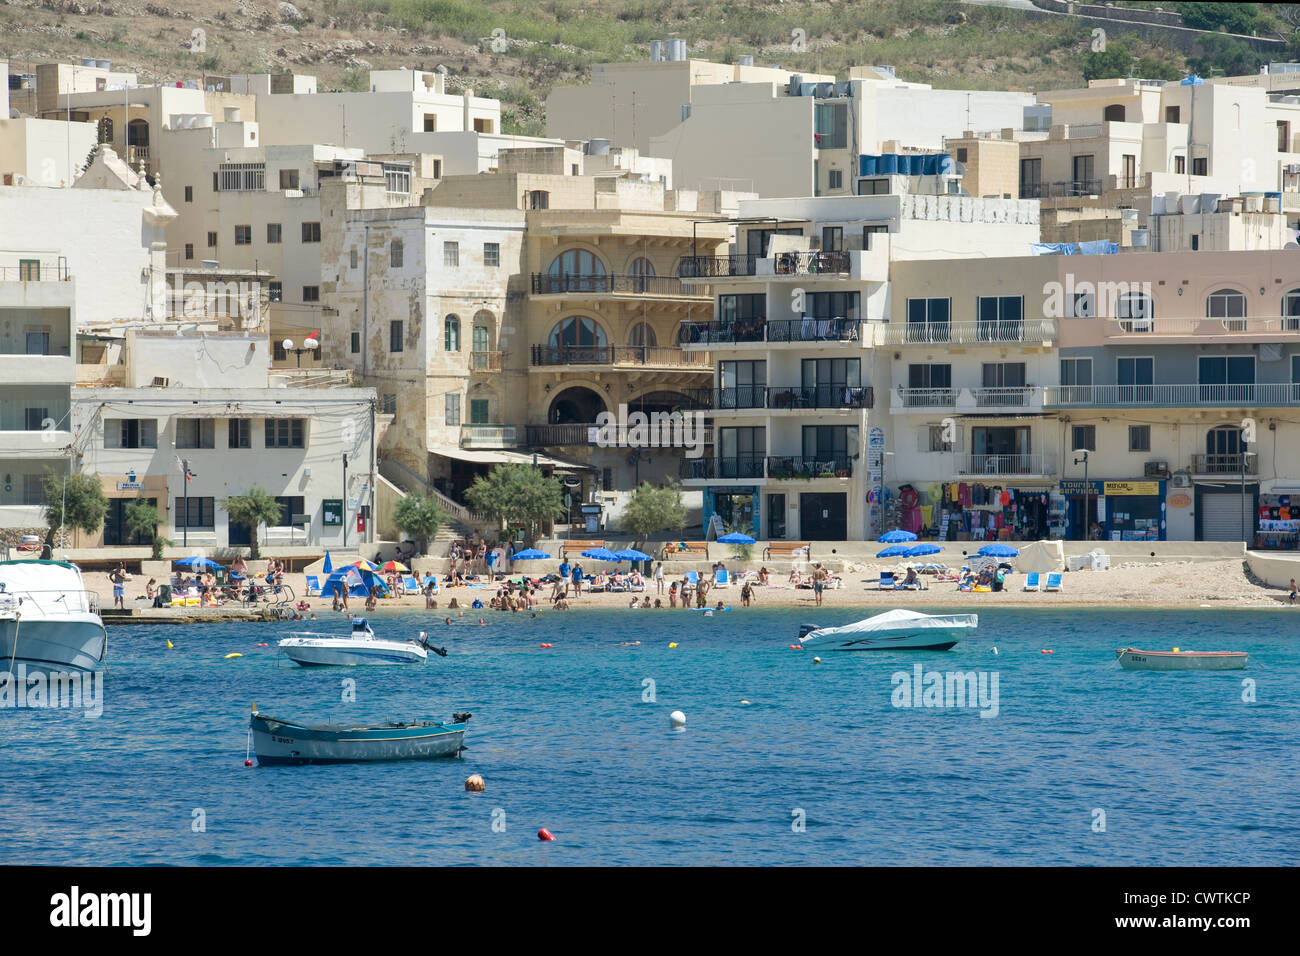 La plage et les appartements de Marsalforn sur l'île maltaise de Gozo. Banque D'Images